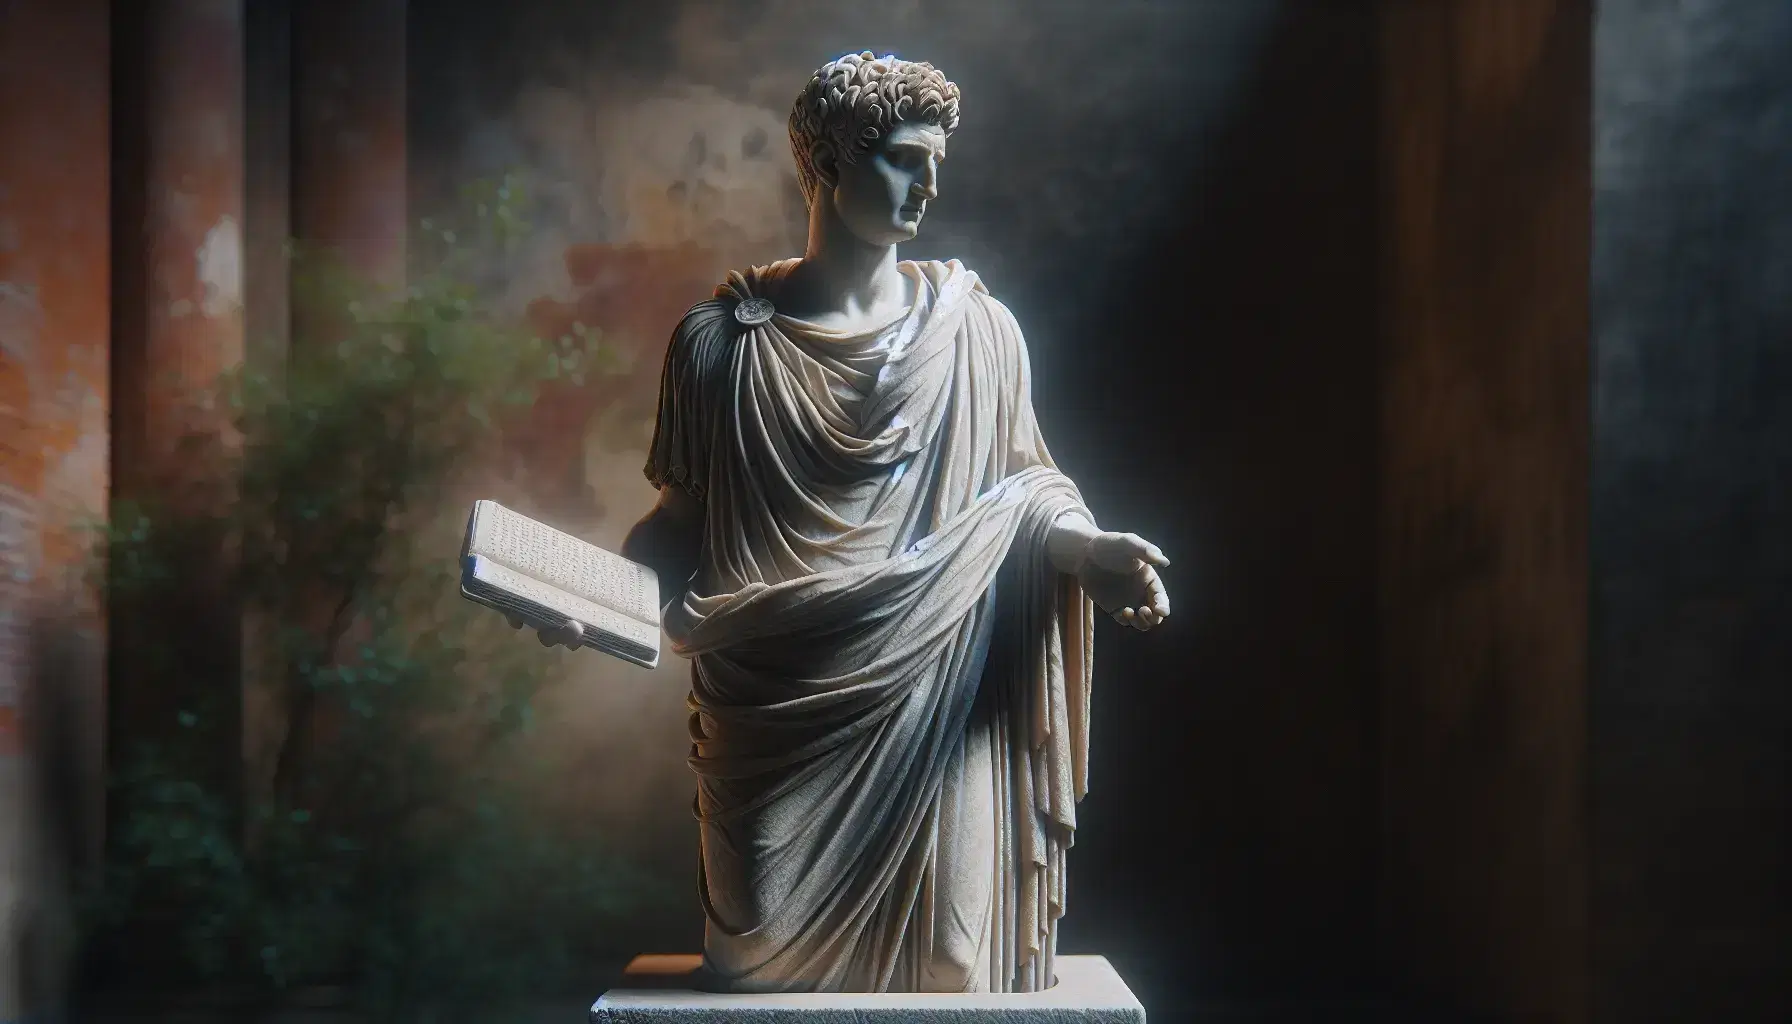 Estatua de piedra gris claro de hombre en atuendo romano tardío con un libro cerrado y mano extendida, sobre pedestal, en fondo desenfocado de vegetación.